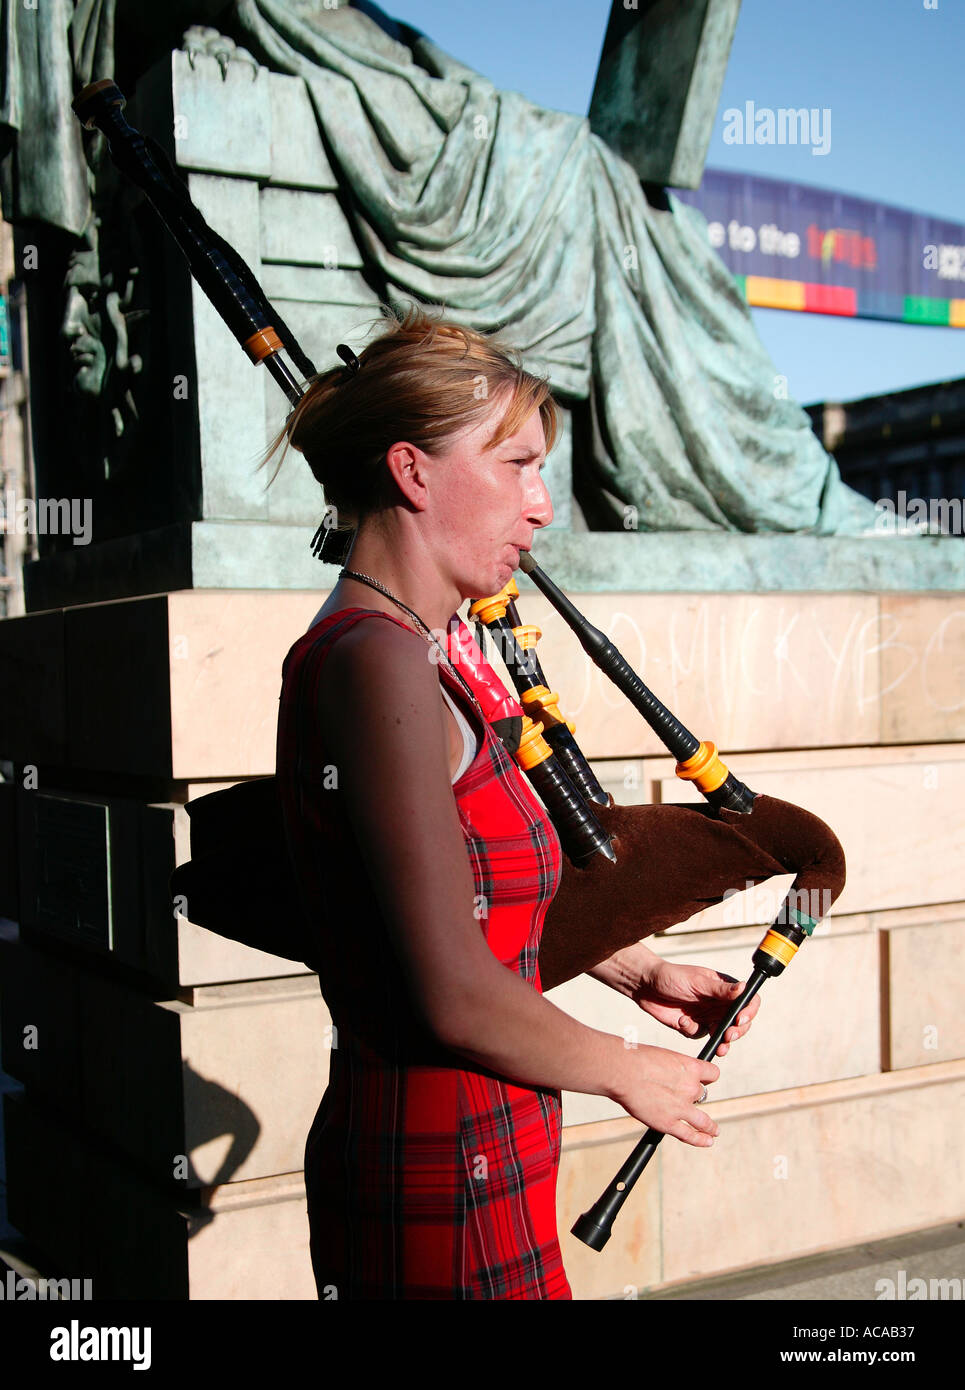 Femme jouant de la cornemuse à piper la ville d'Edinburgh Fringe Festival dans le Royal Mile Ecosse UK 2004 Banque D'Images